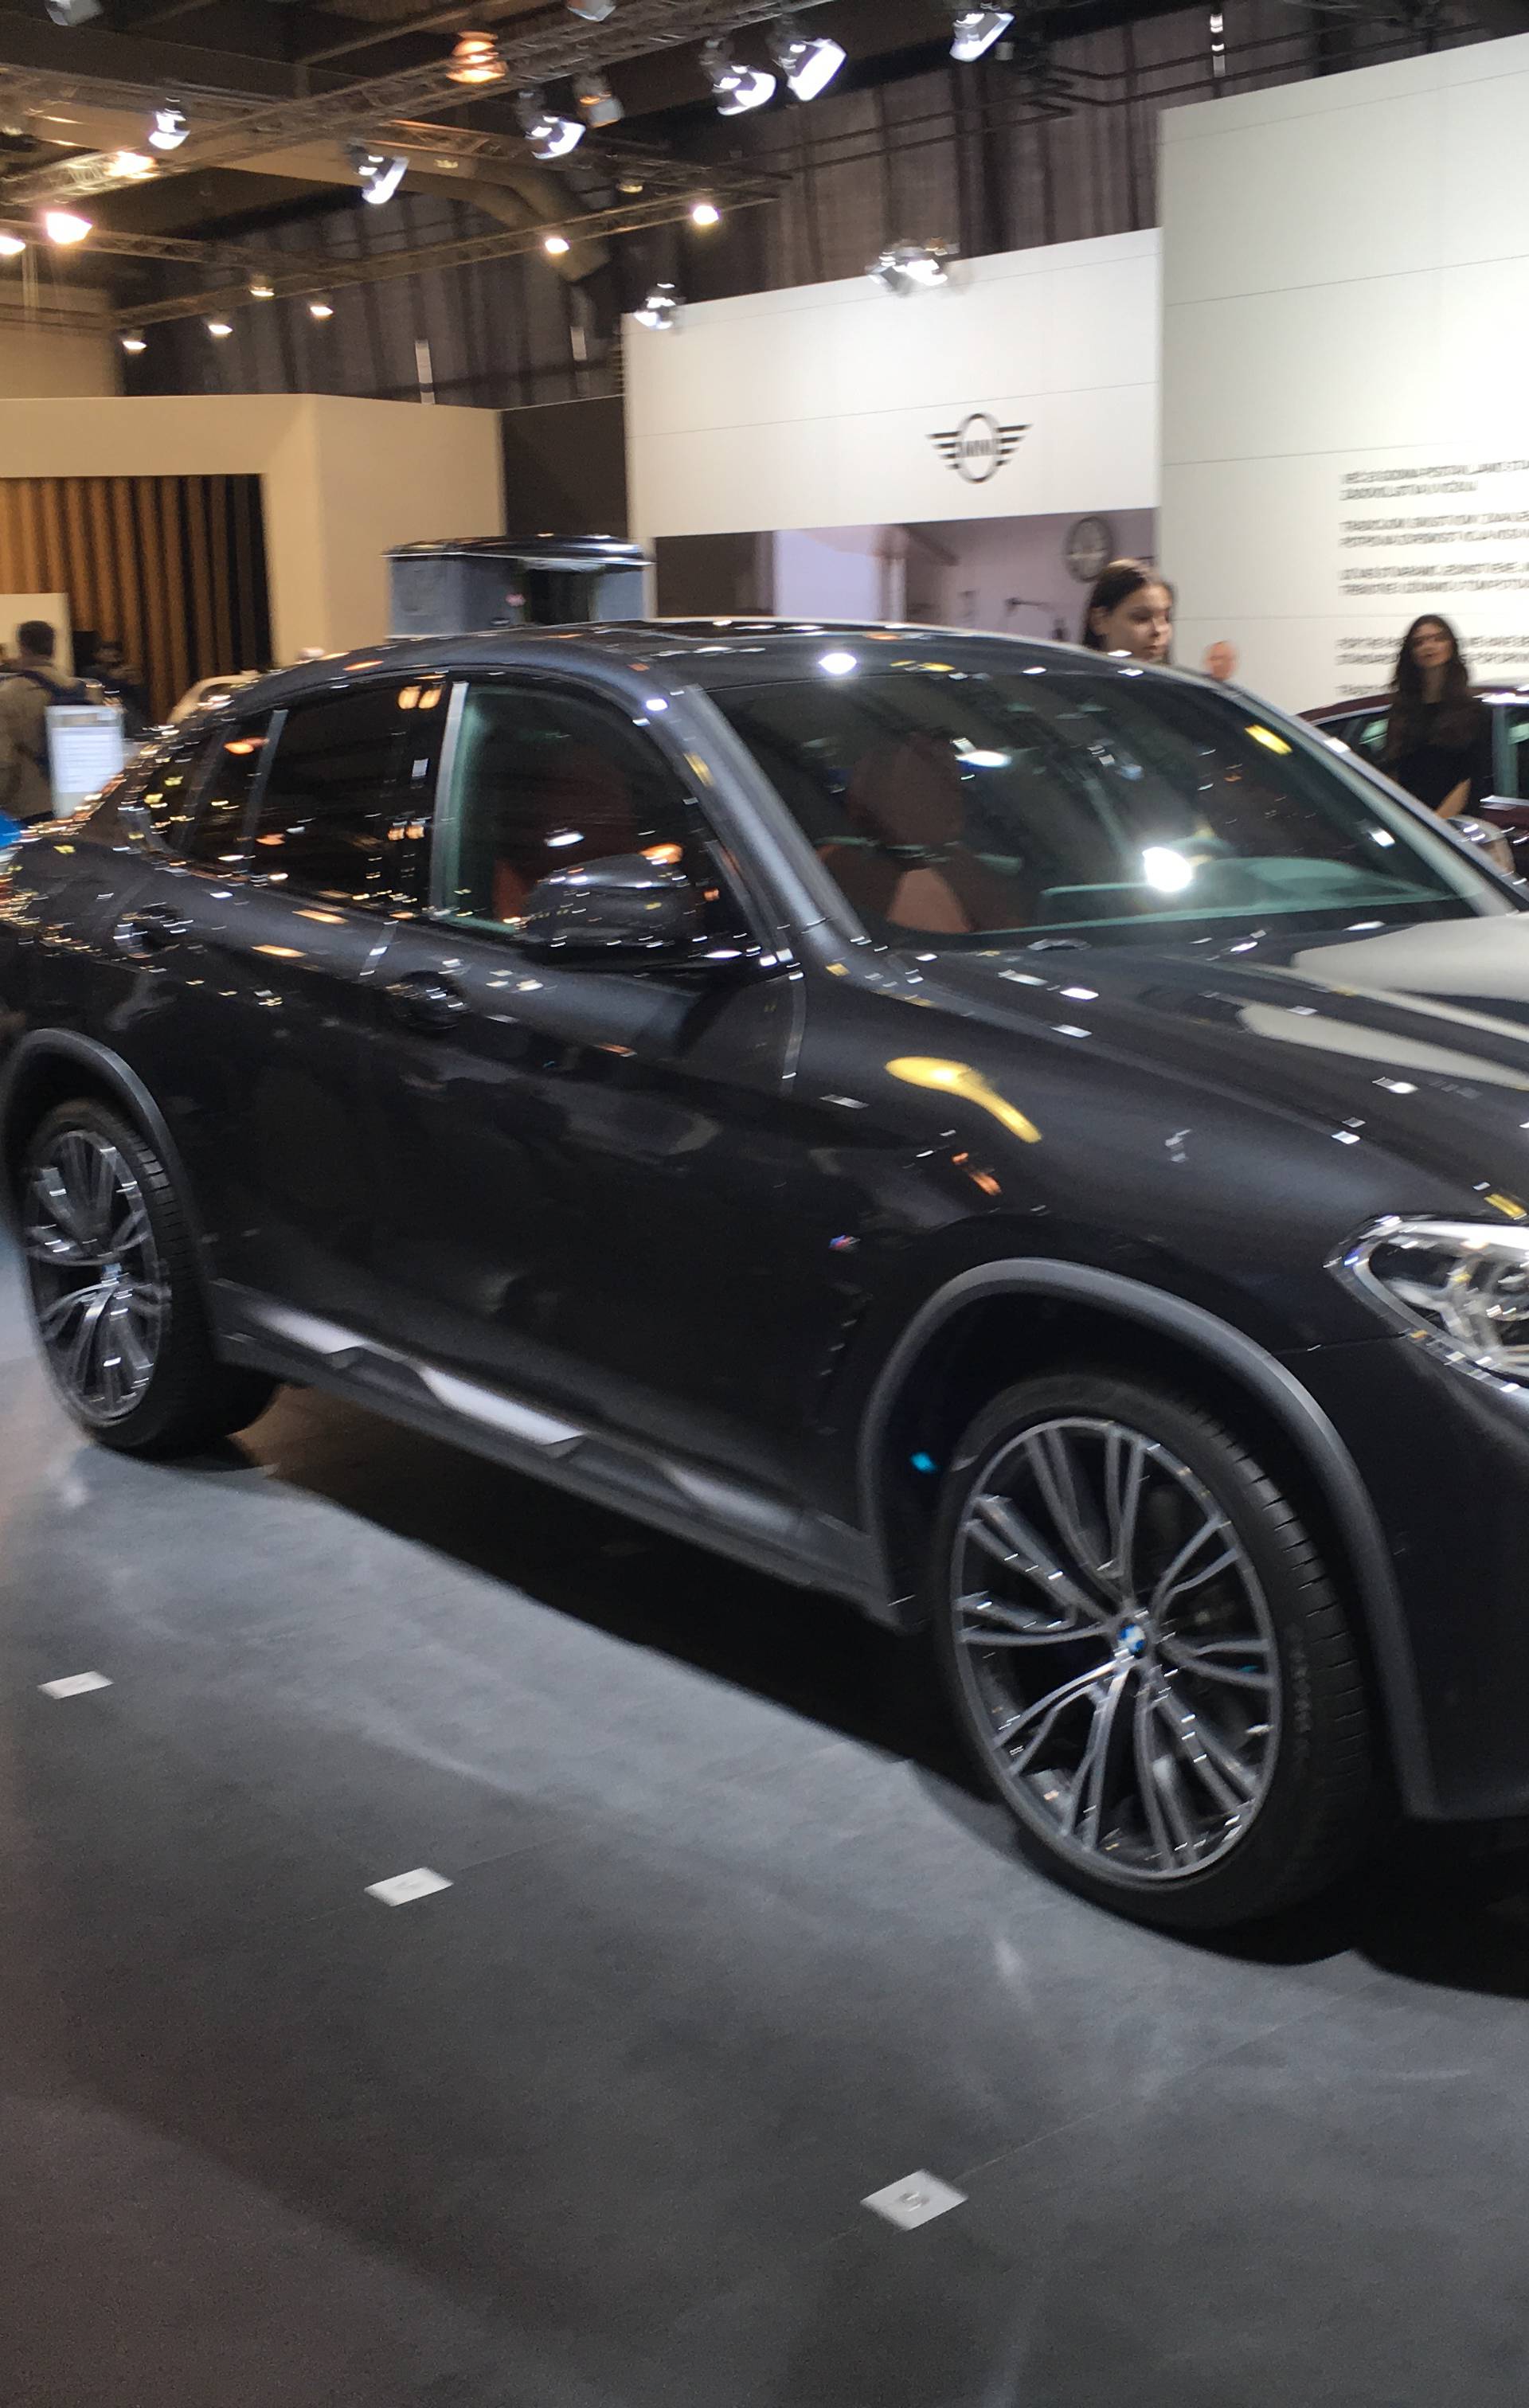 BMW od 2,2 milijuna kn jedan od najskupljih na Auto Showu